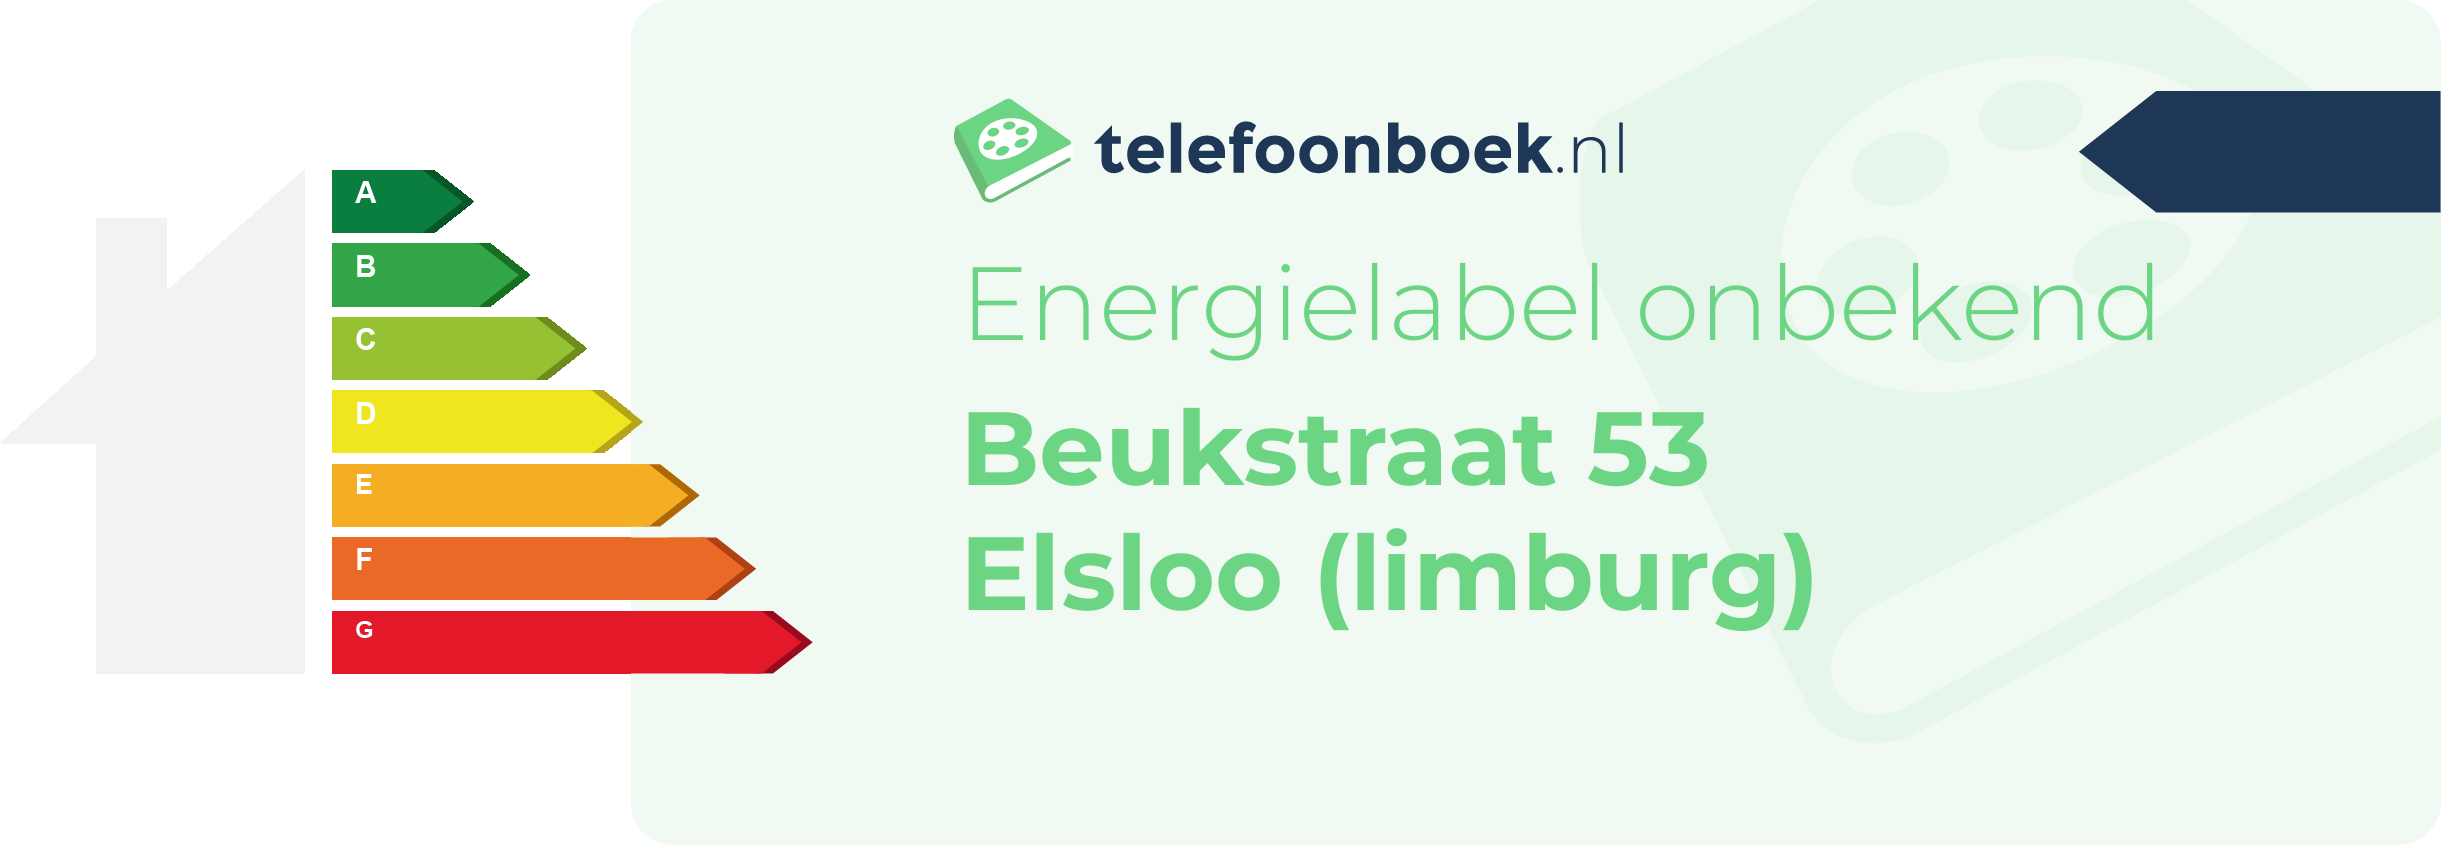 Energielabel Beukstraat 53 Elsloo (Limburg)